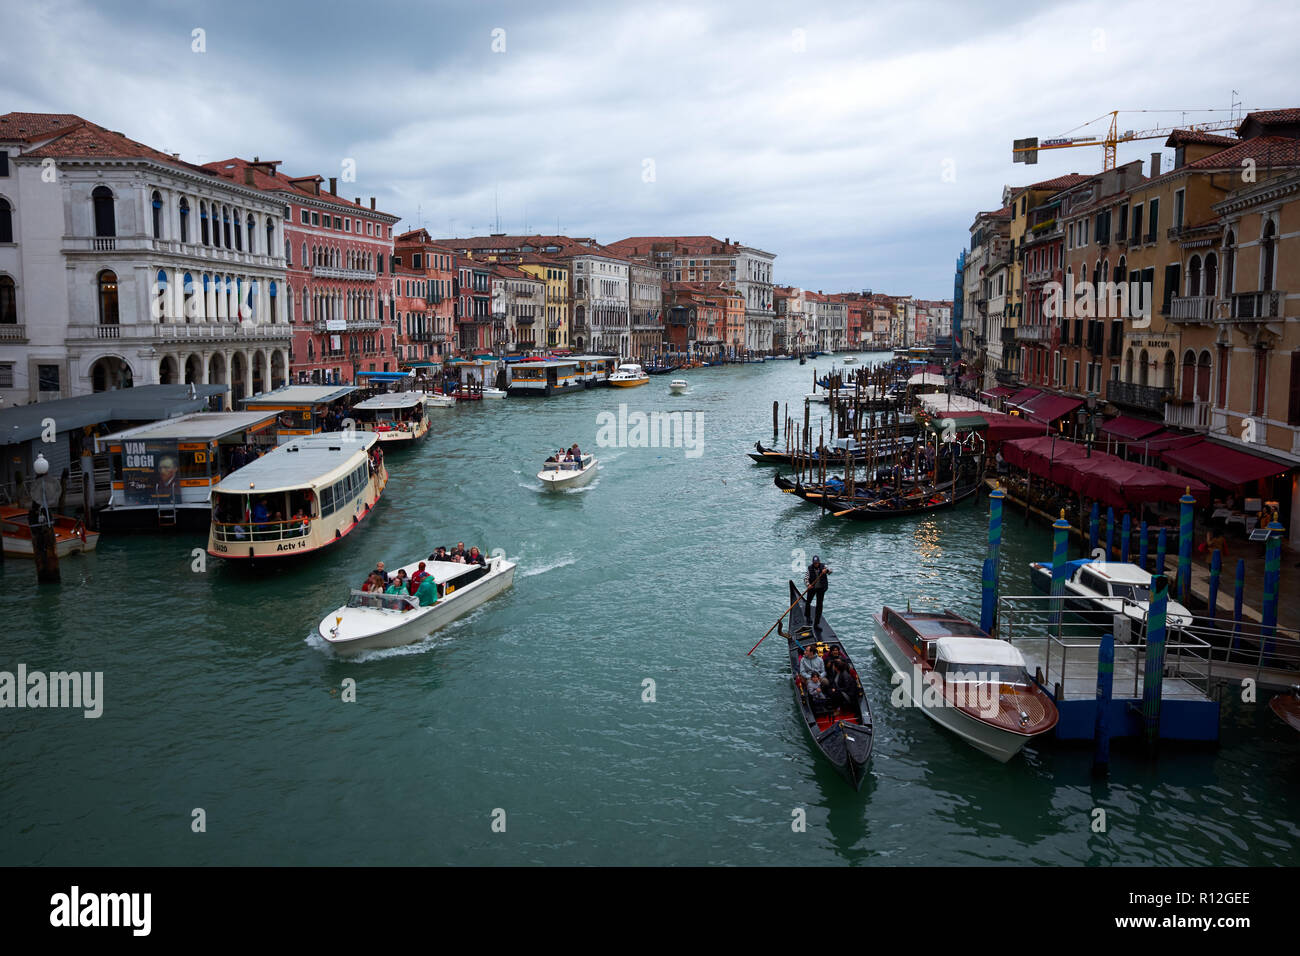 / Venise Italie - 3 novembre 2018 : à l'aval du pont du Rialto à Venise, l'Italie le long du grand canal bordé de bâtiments historiques. Banque D'Images